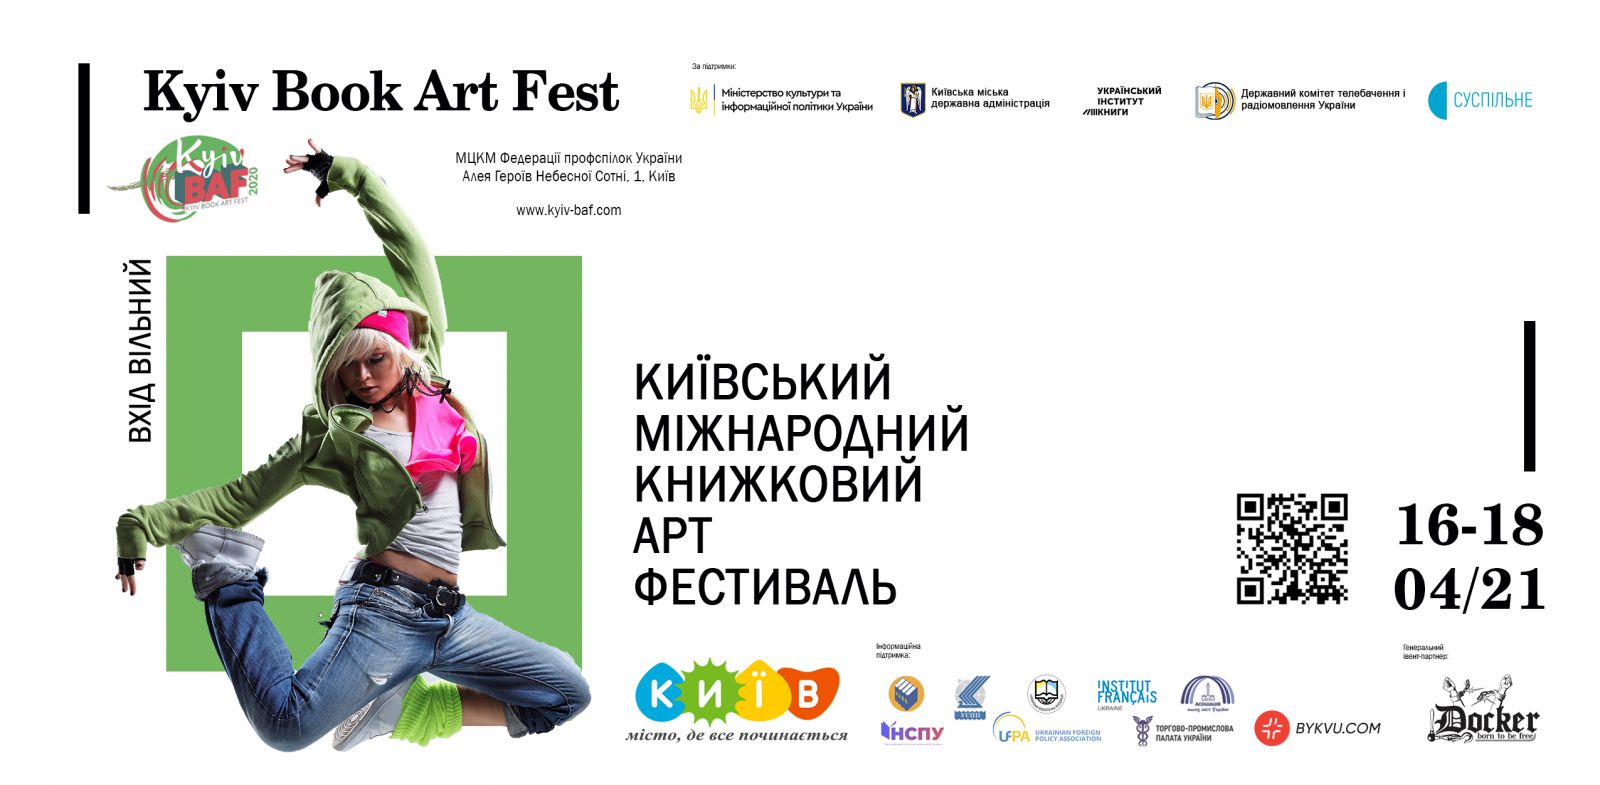 Київський міжнародний книжковий арт-фестиваль Kyiv Book Art Fest 2020